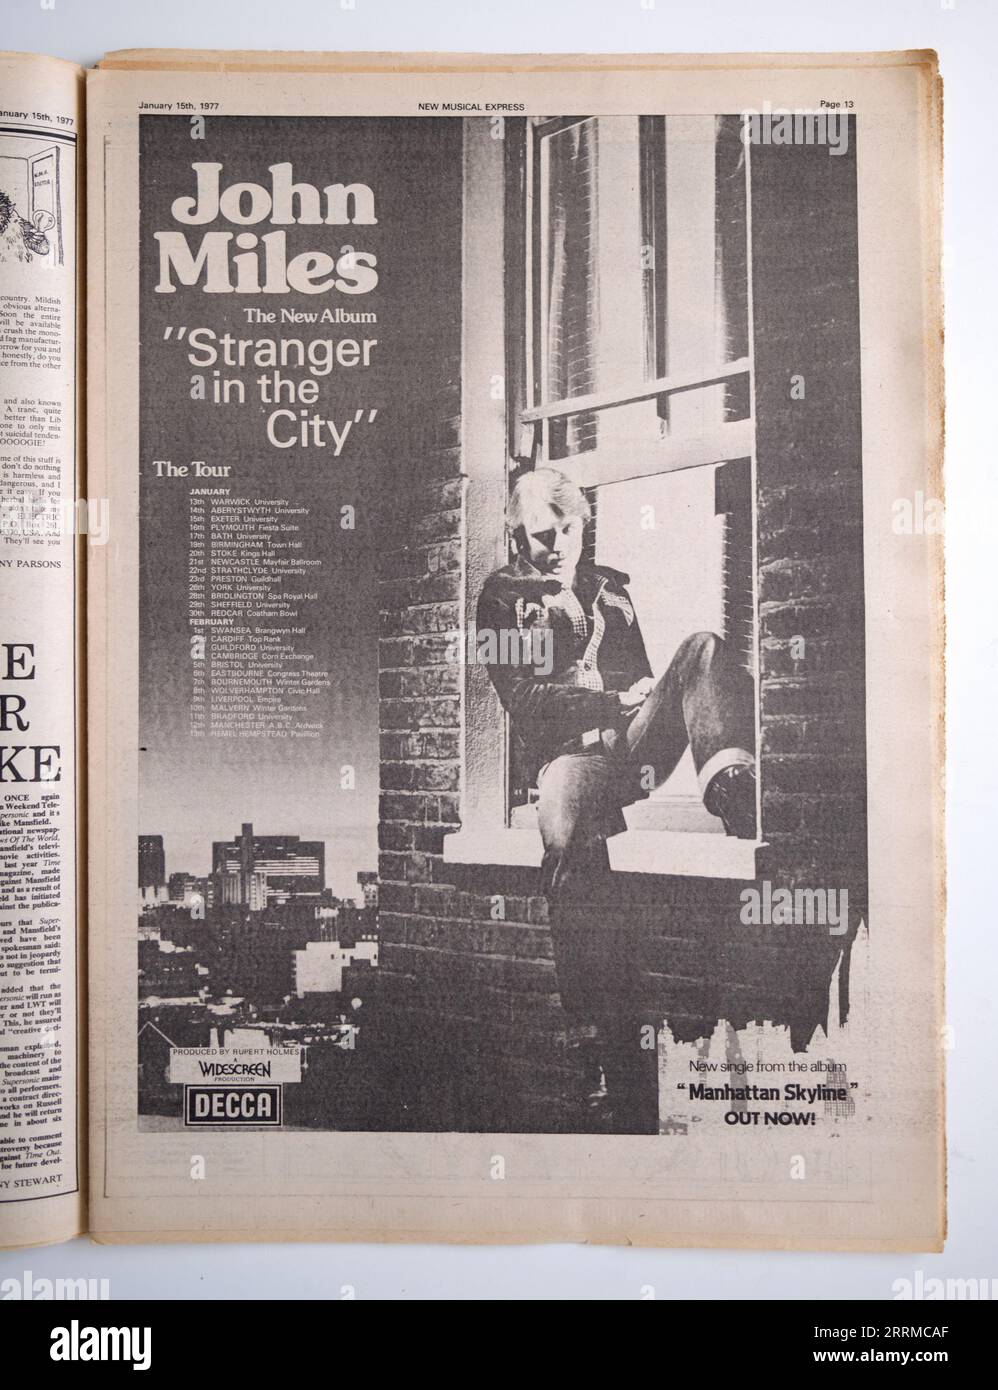 Pubblicità per l'album di John Miles "Stranger in the City" in New Music Express NME Foto Stock